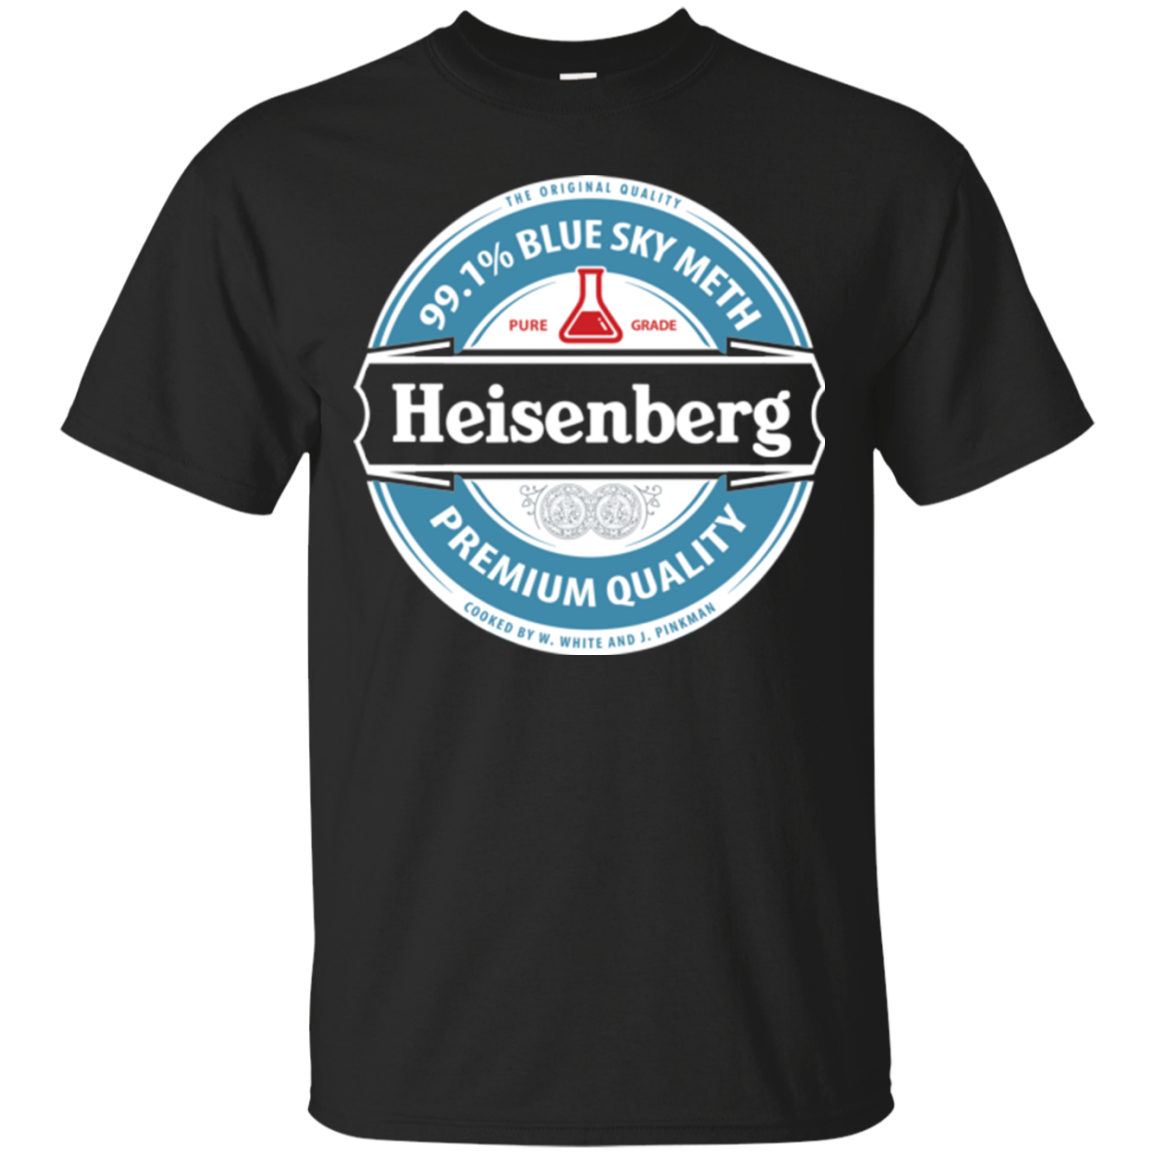 Breaking Bad Heisenberg Heineken Shirts - Teesmiley